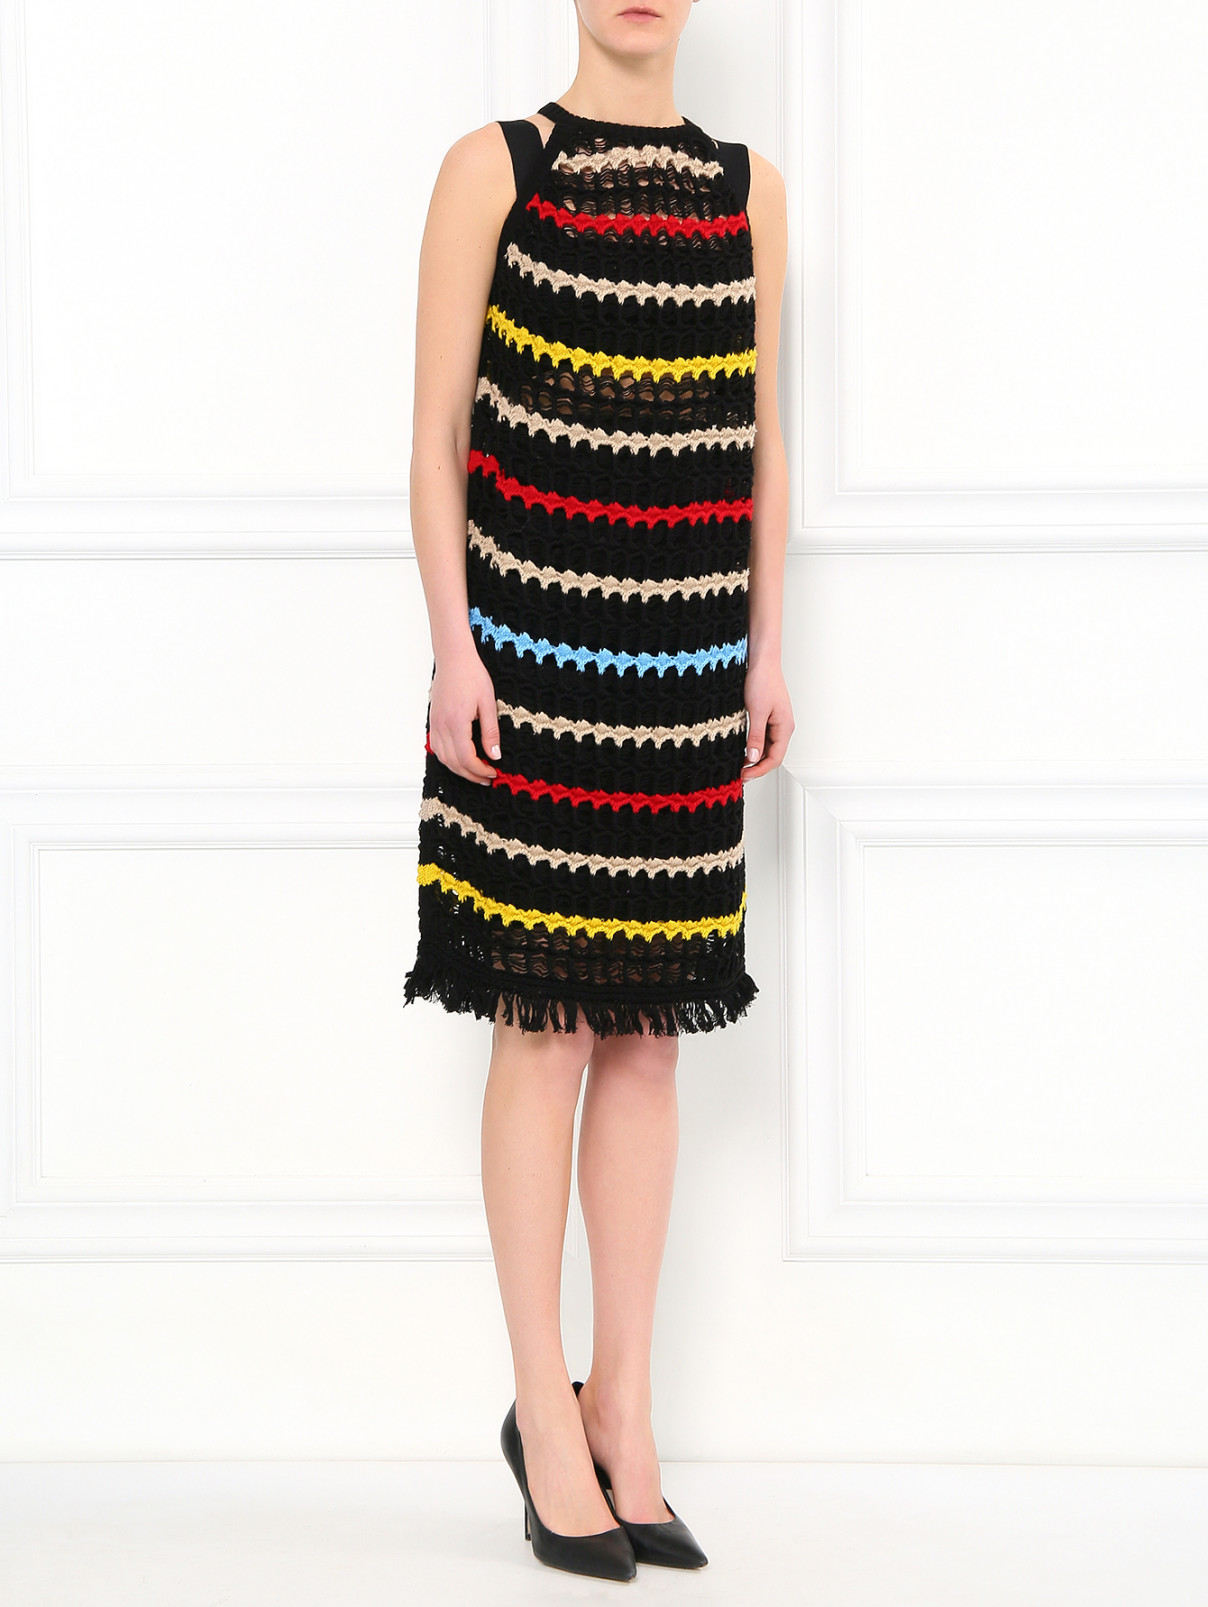 Платье из хлопка с узором "полоска" JO NO FUI  –  Модель Общий вид  – Цвет:  Черный